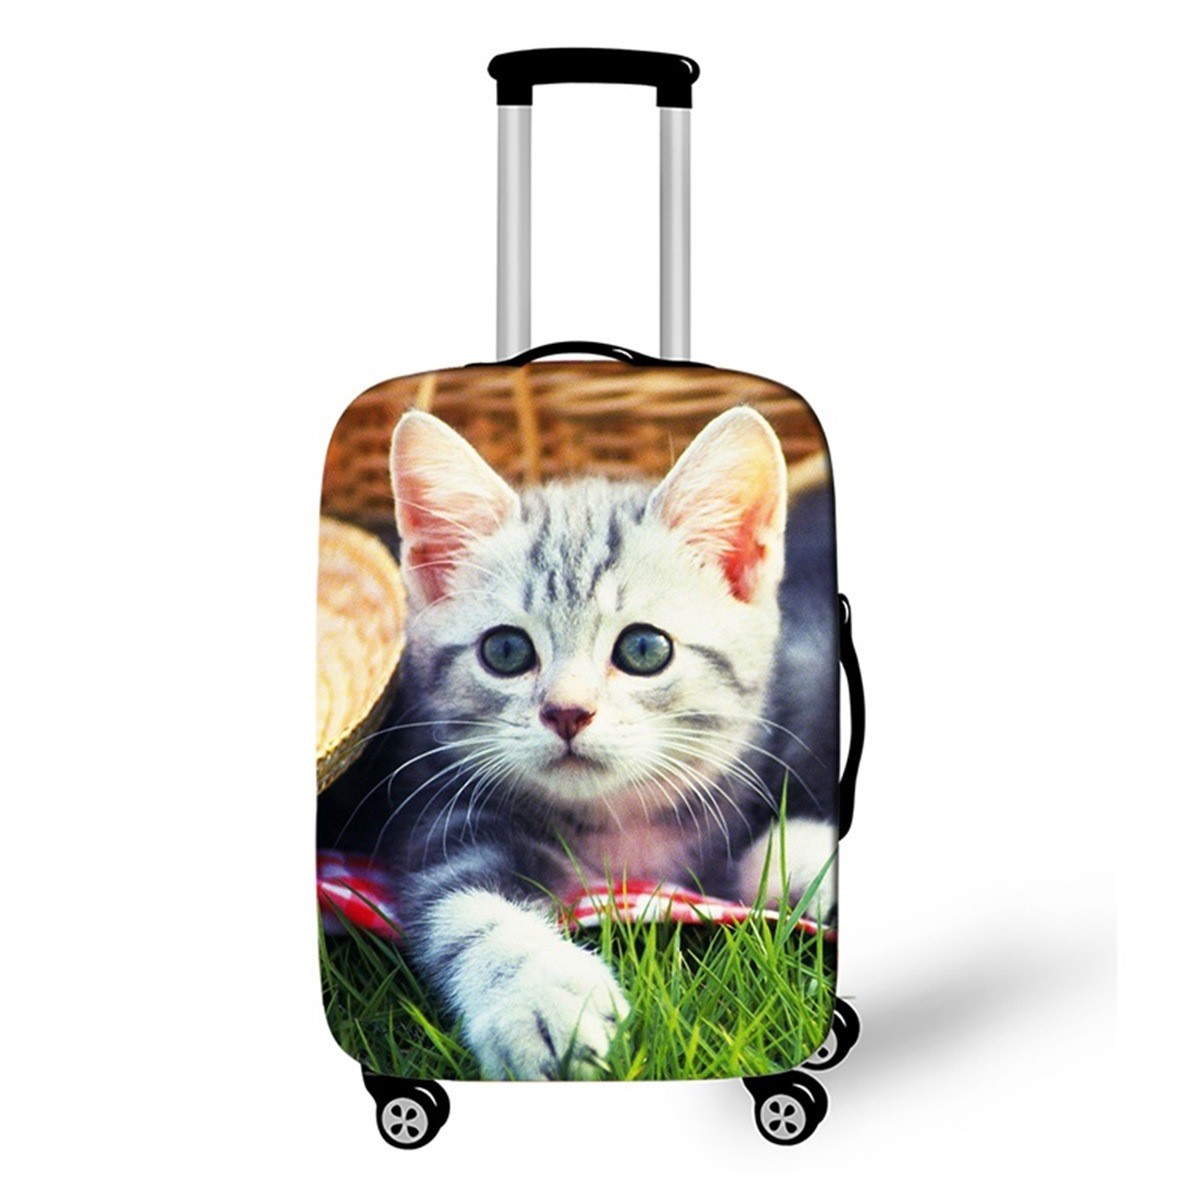 OCTTO[แมวตะกร้า] ผ้าคลุมกระเป๋าเดินทาง ผ้ายืดคลุมกระเป๋าเดินทาง ผ้าสเปนเด็ก ผ้าคลุมกระเป๋าเดินทางล้อลาก Luggage Cover